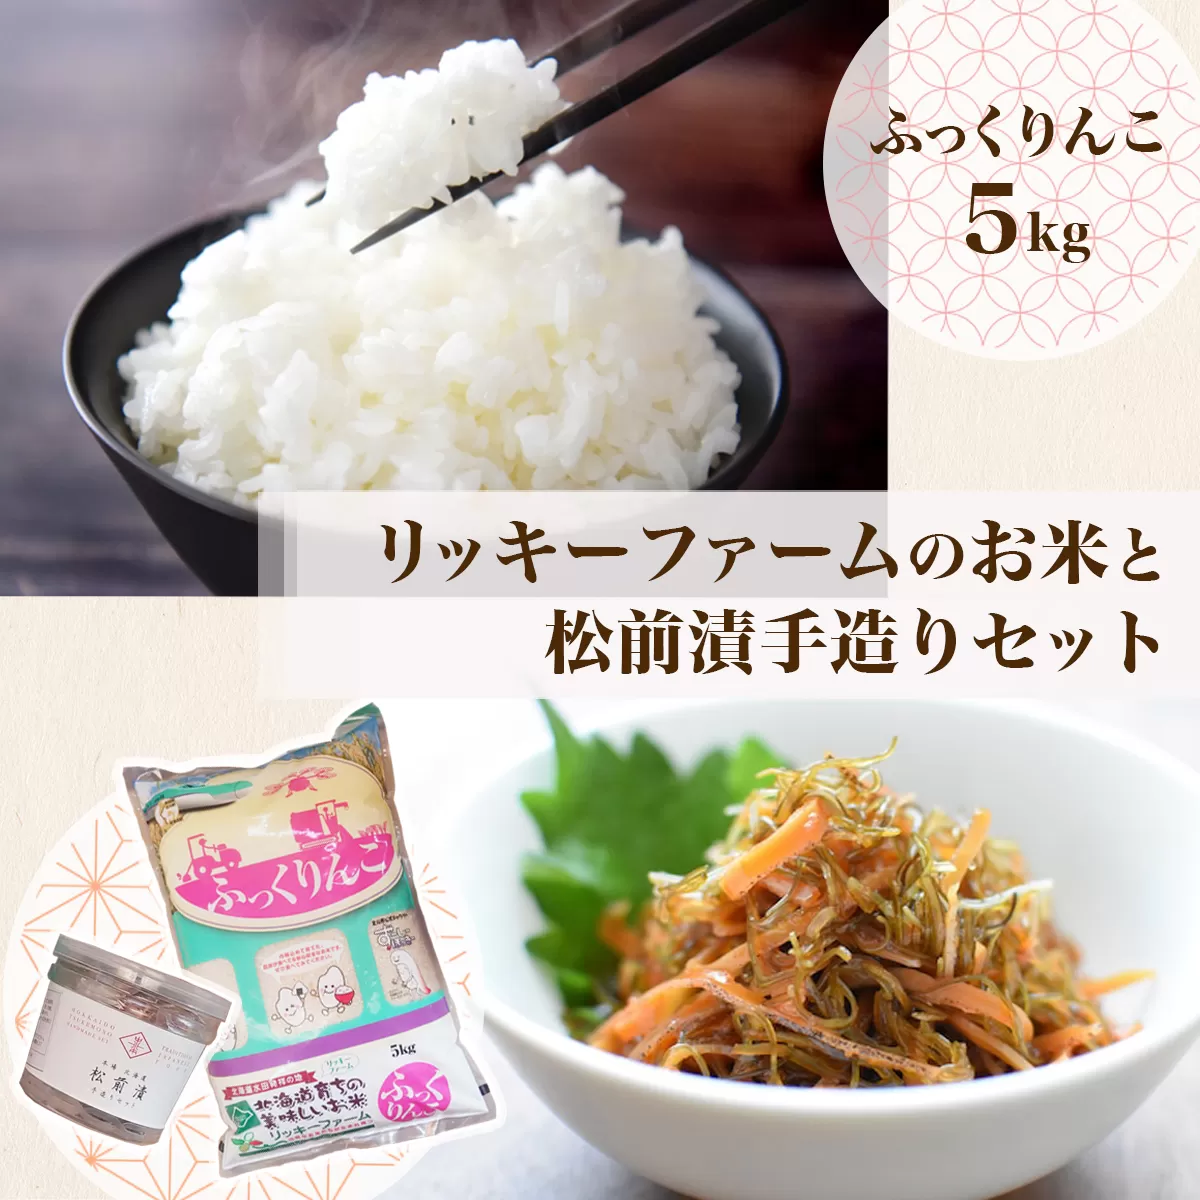 リッキーファームのお米と松前漬け手作りセット【ふっくりんこ5kg】 HOKK015